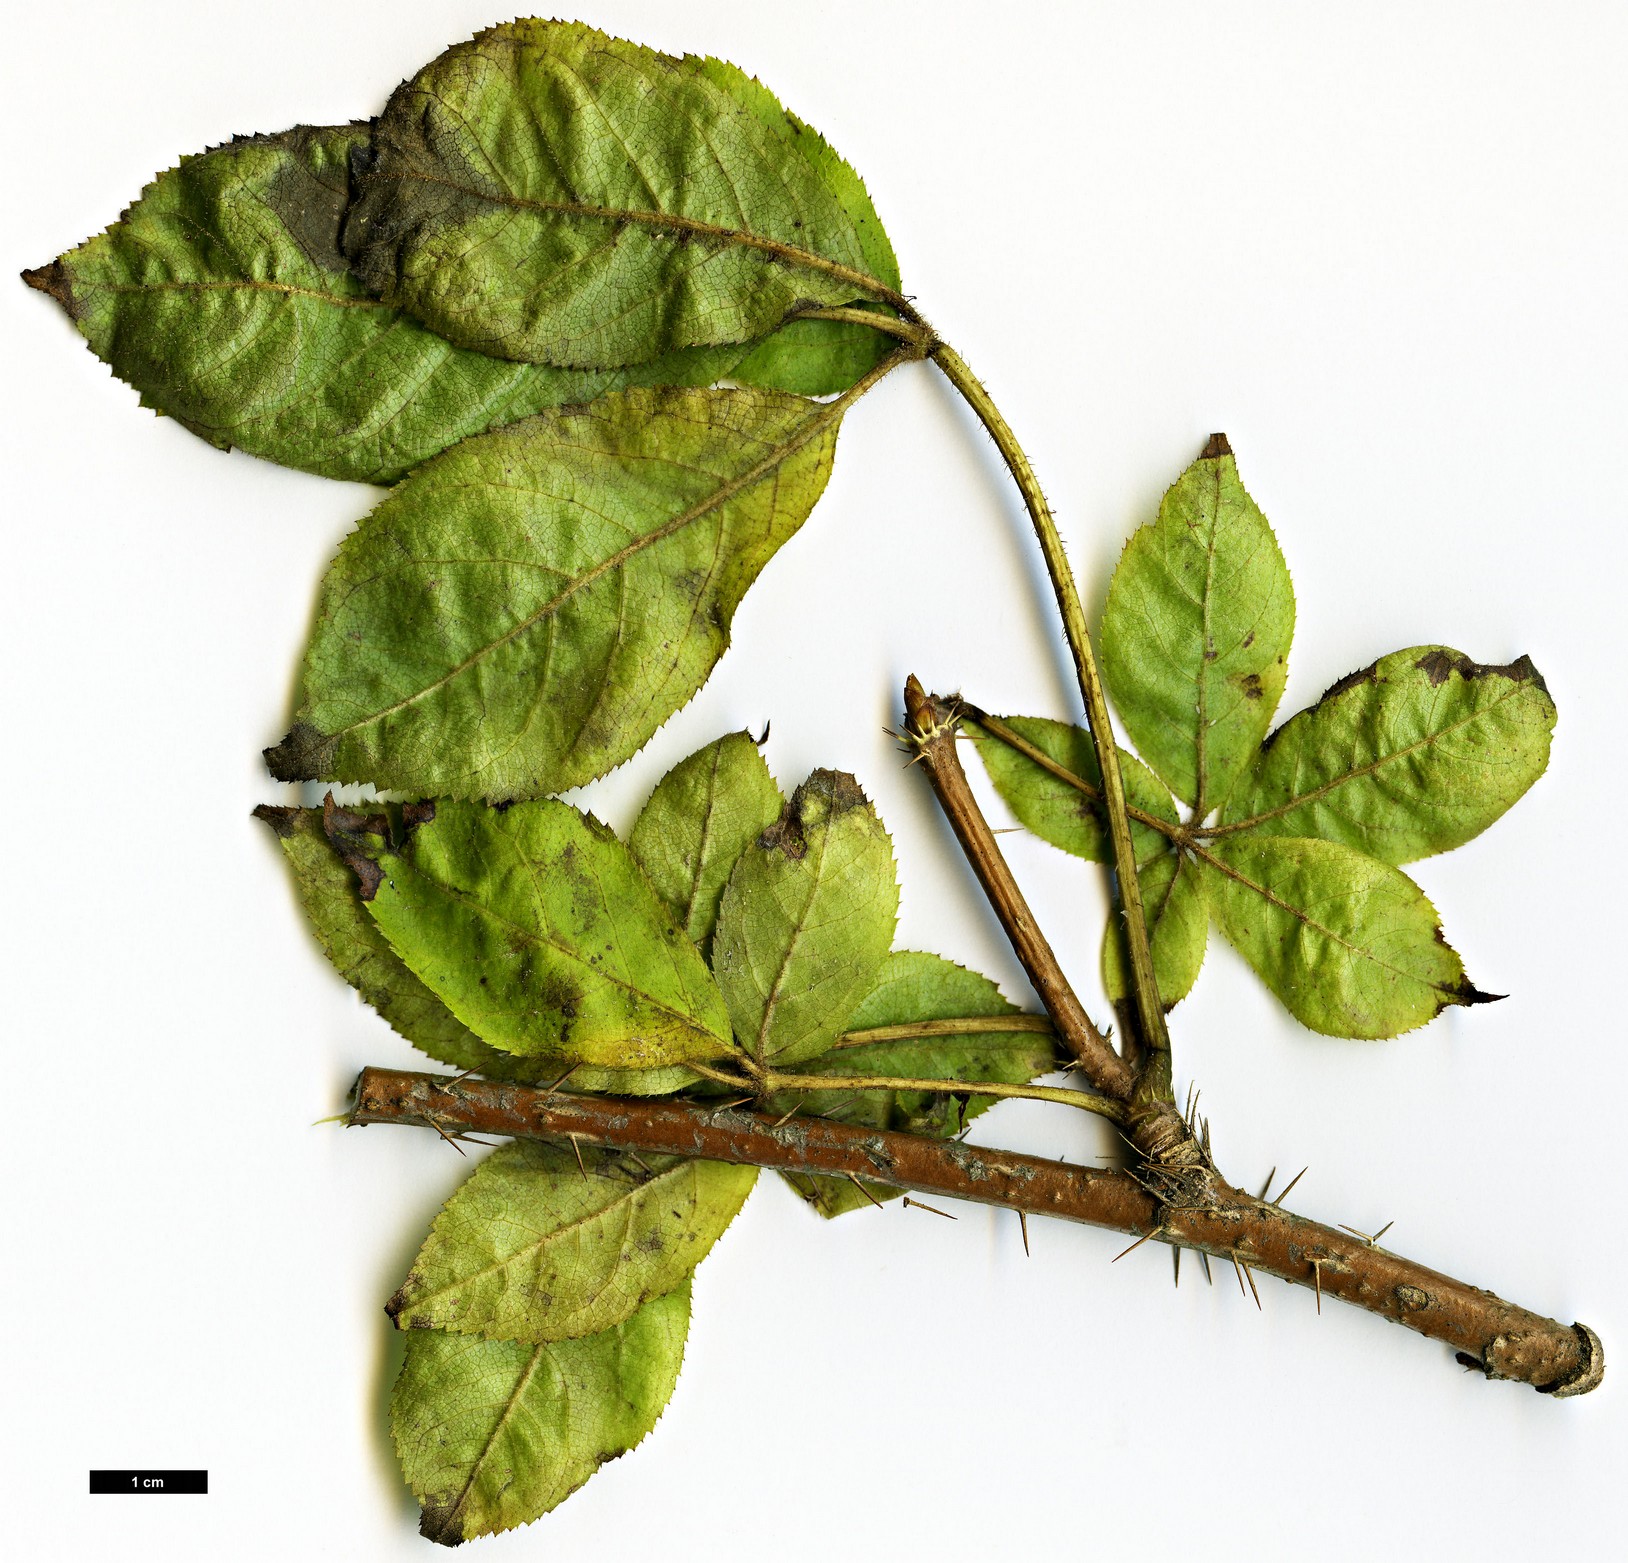 High resolution image: Family: Araliaceae - Genus: Eleutherococcus - Taxon: senticosus